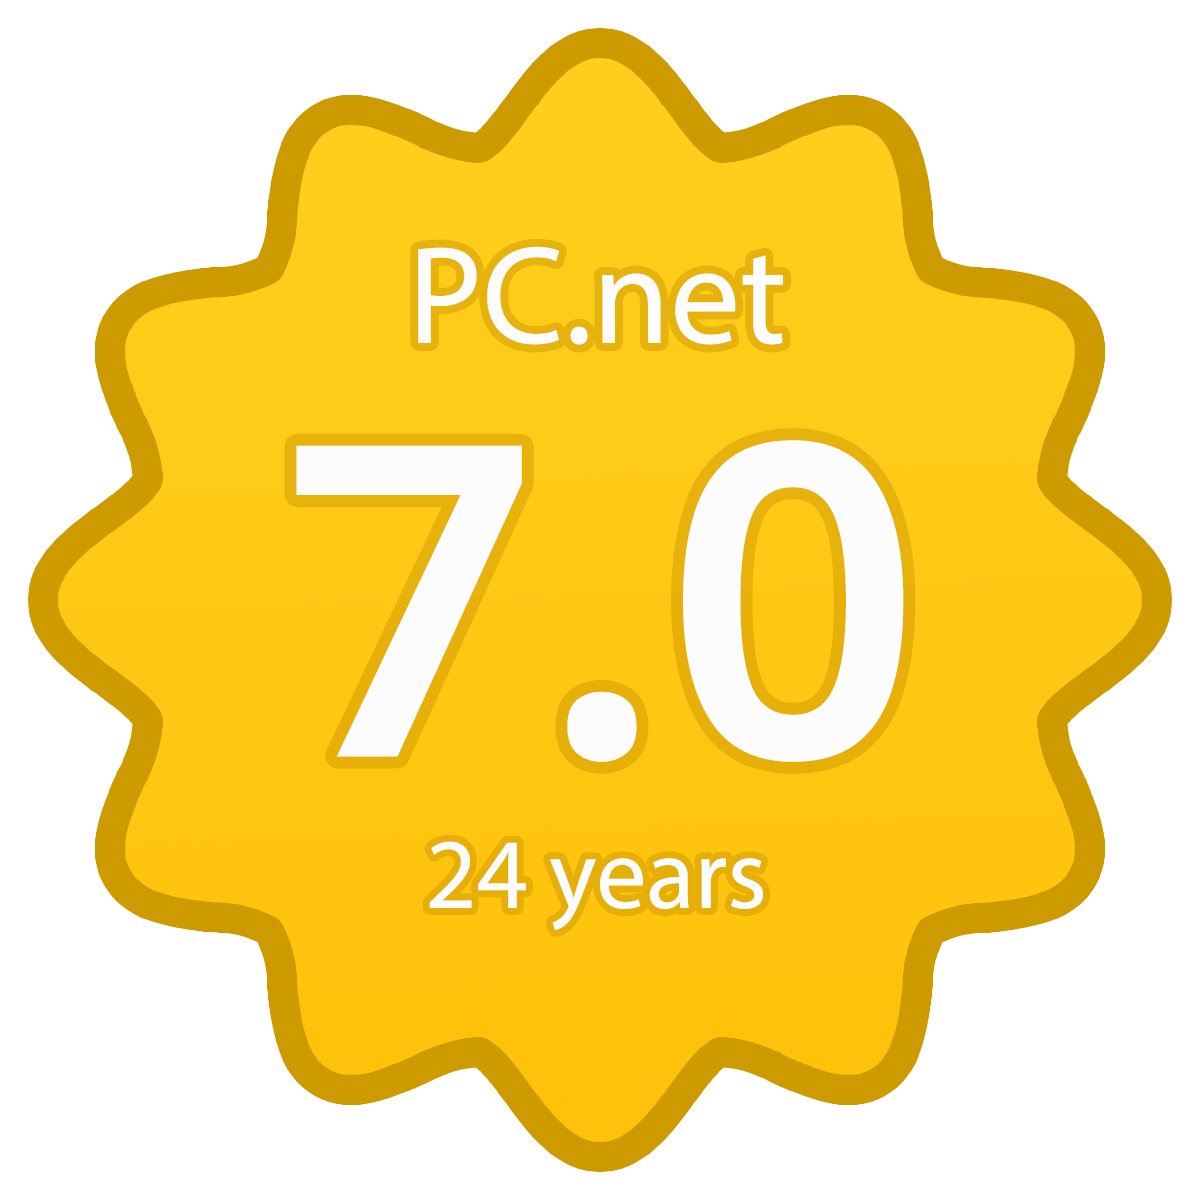 PC.net is Back!